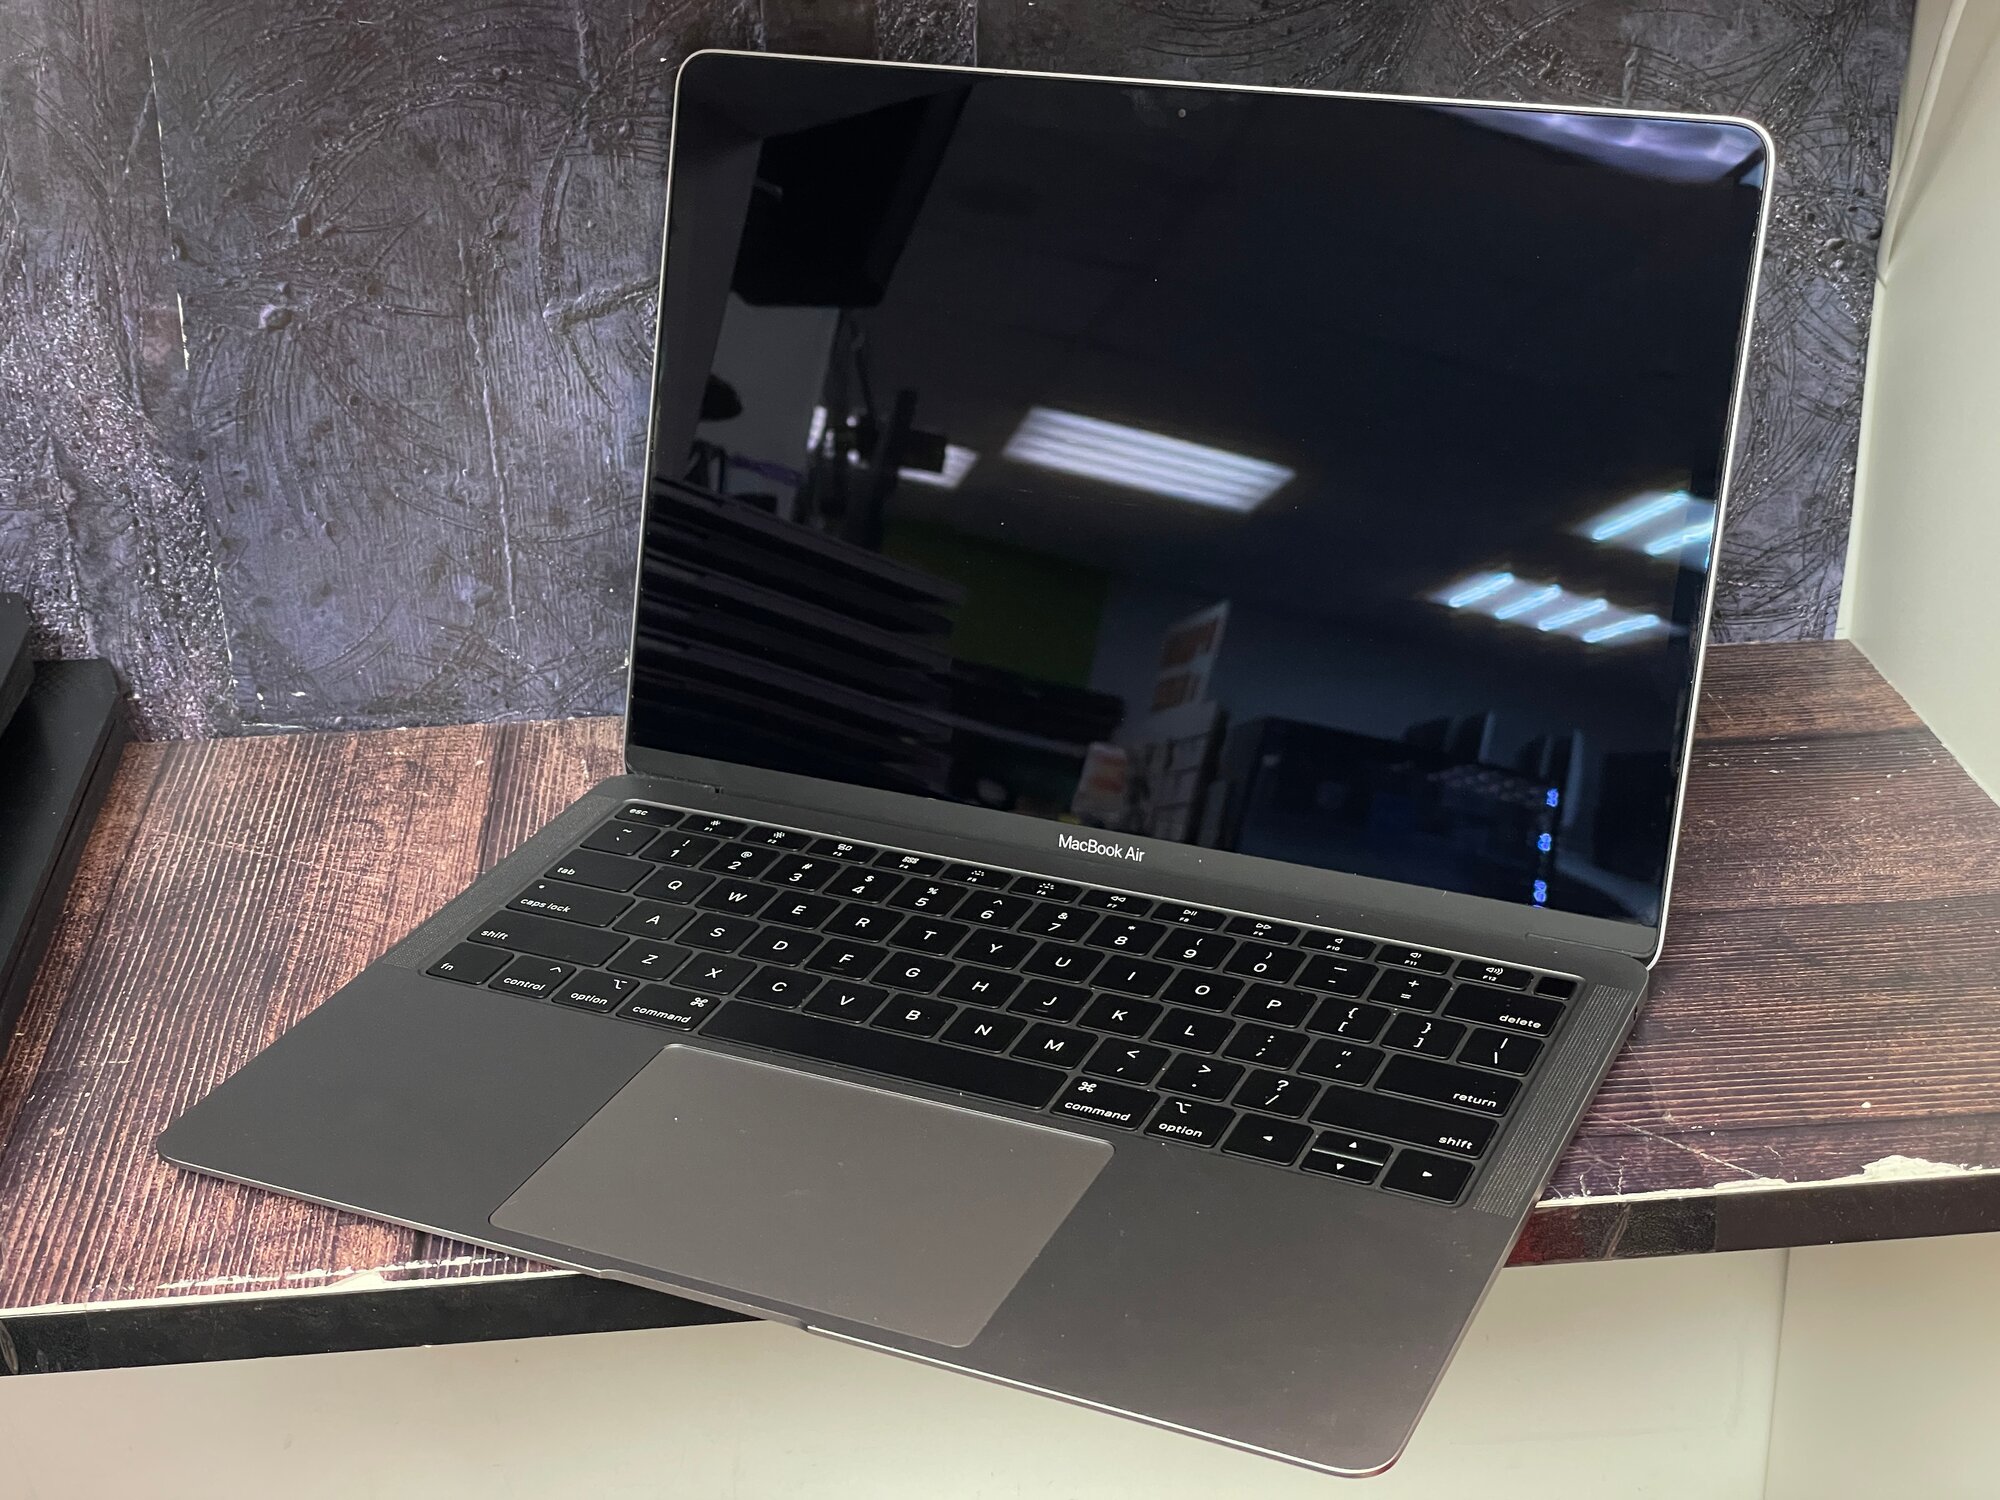 13.3" Ноутбук Apple MacBook Air 13 Mid 2019 2560x1600, Intel Core i5 1.6 ГГц, RAM 8 ГБ, SSD 128 ГБ, Intel UHD Graphics 617, macOS, серый космос